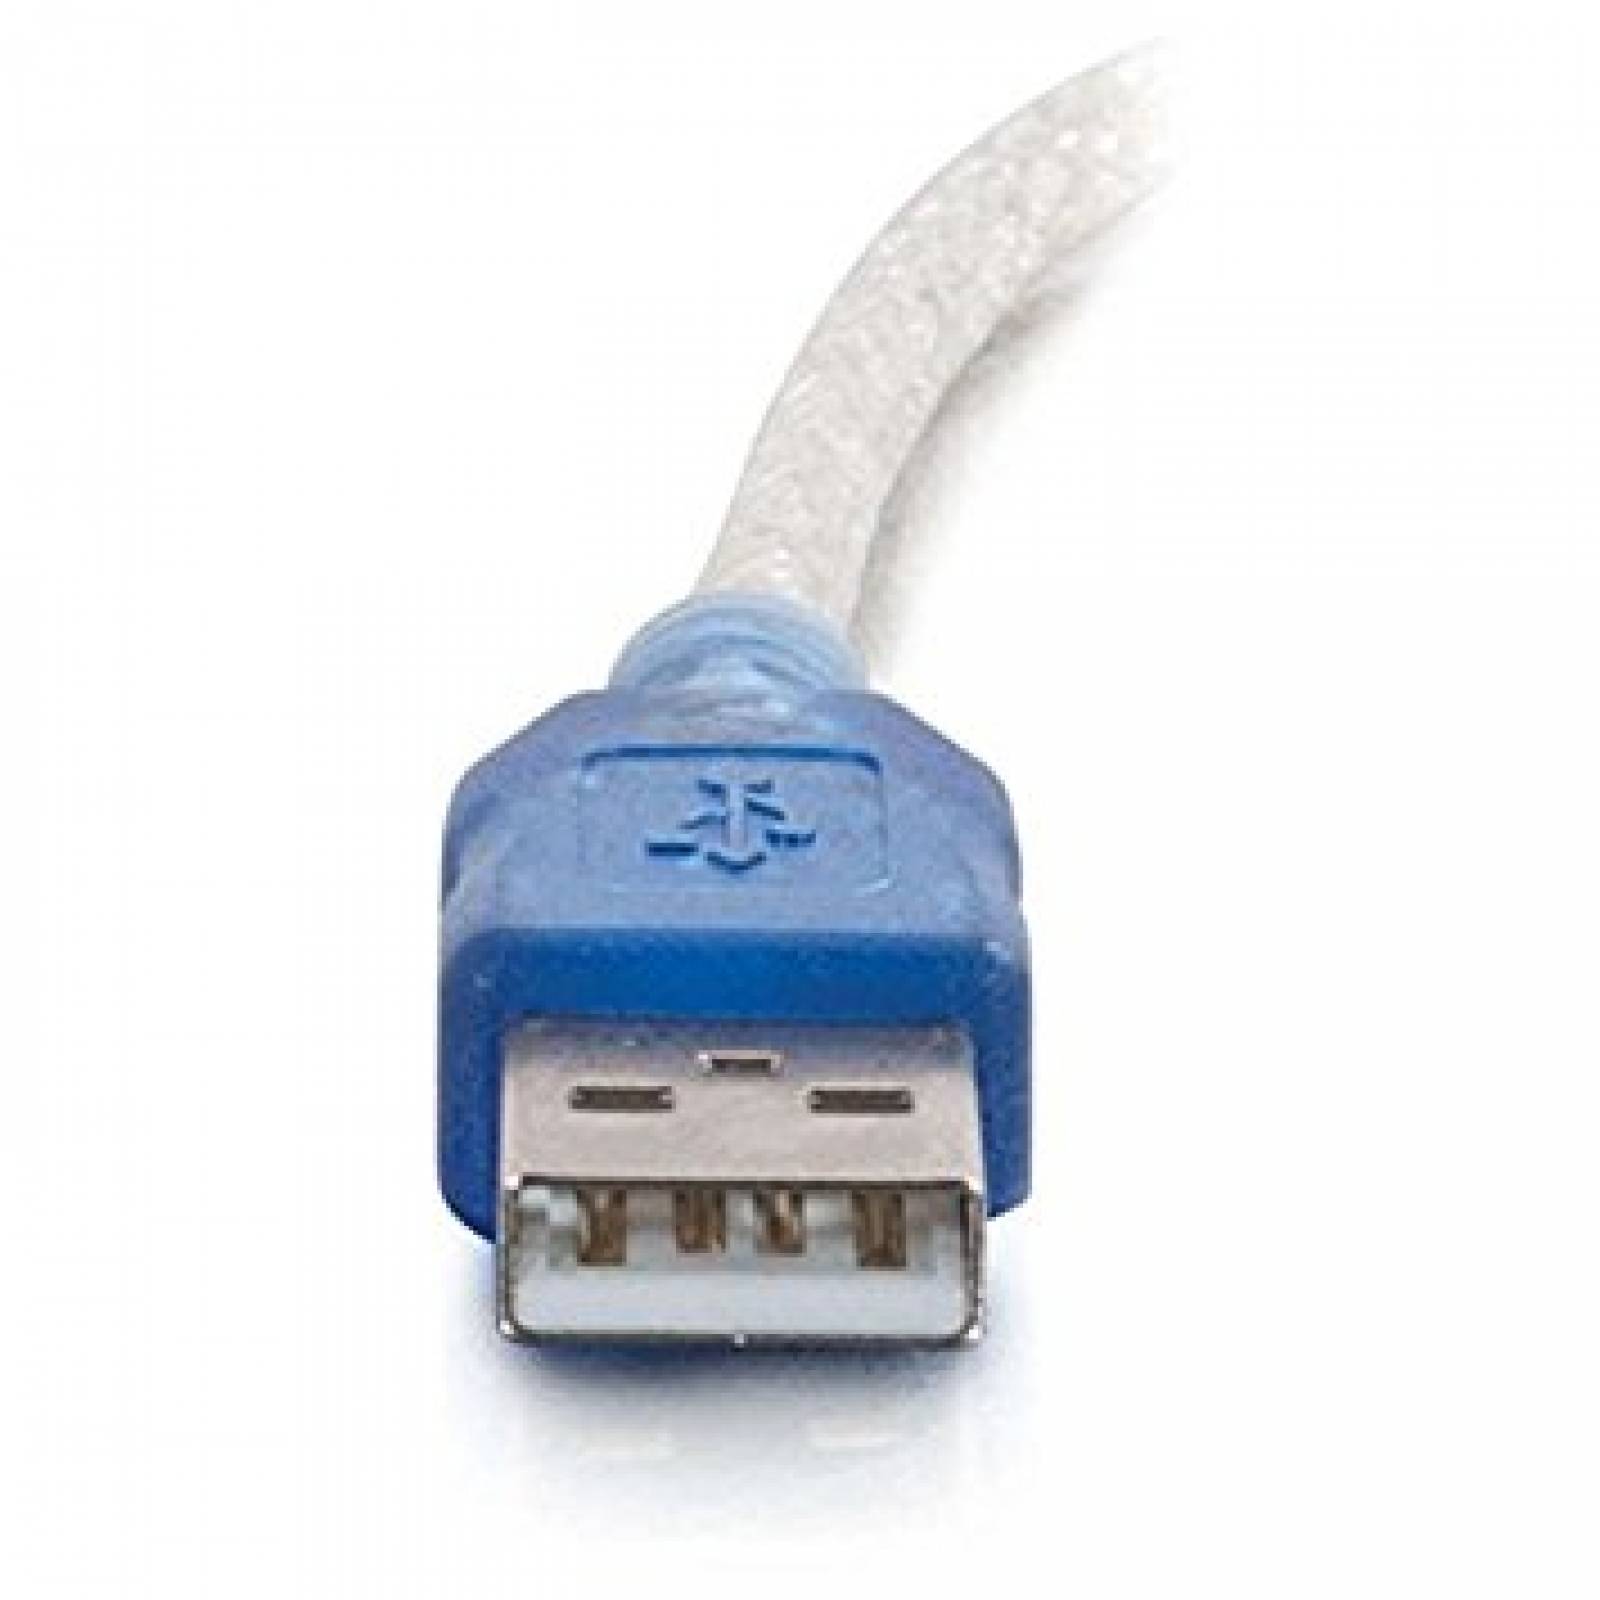 Cable Adaptador C2g Usb A Db25 Serial Rs232 1.8 Metros